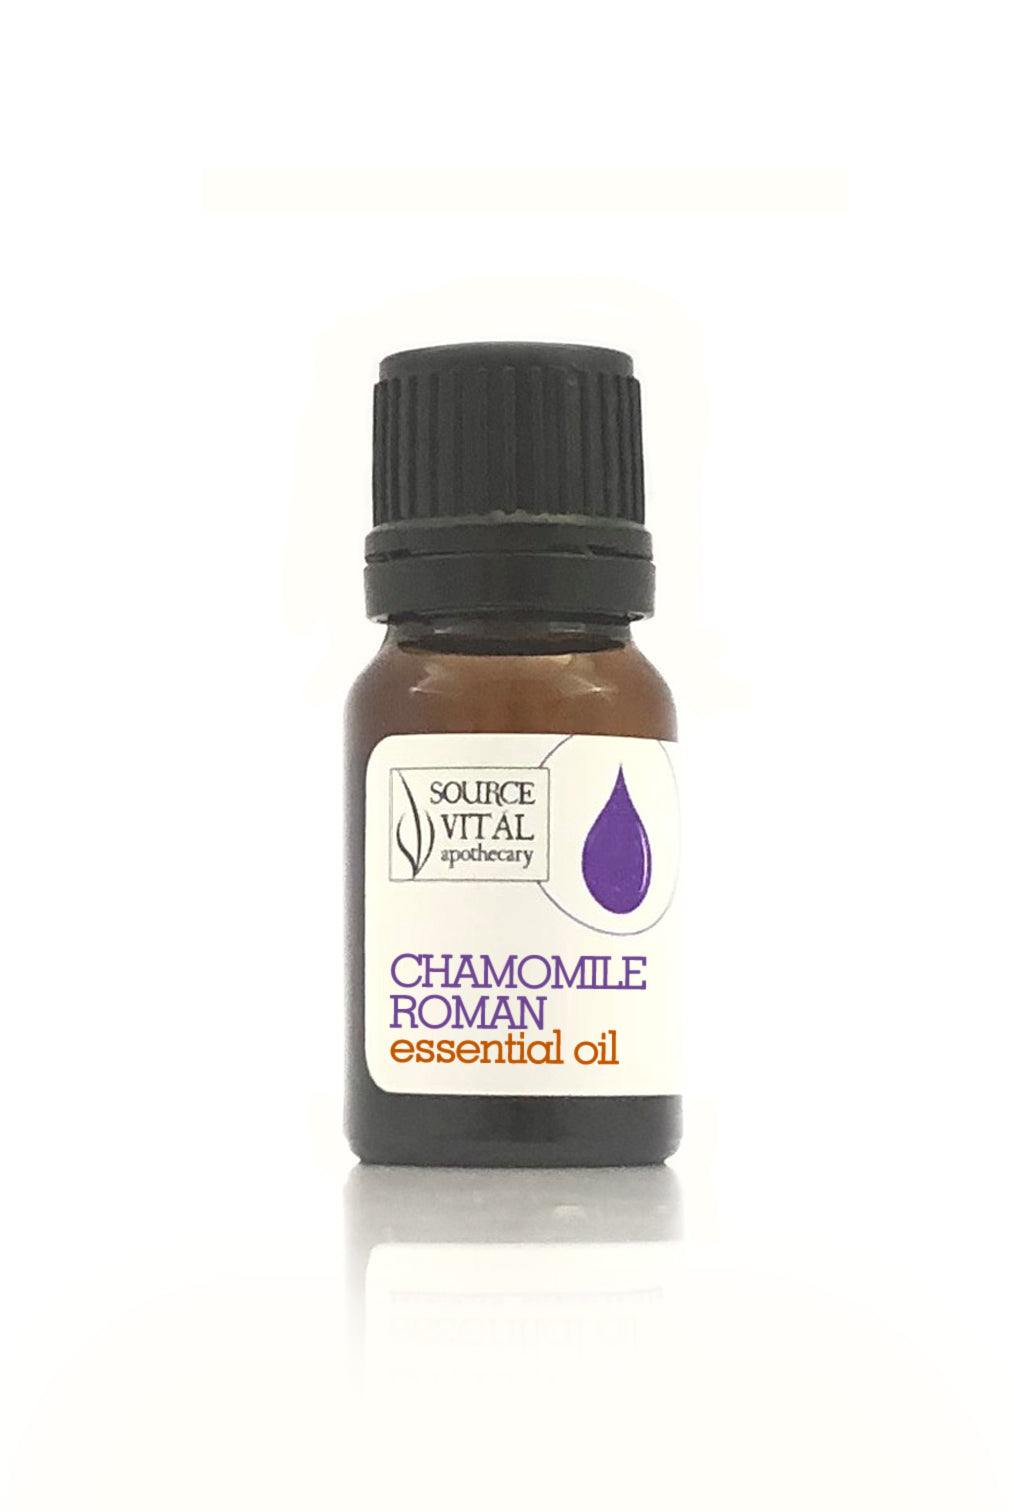 Chamomile Roman 100% Pure Essential Oil